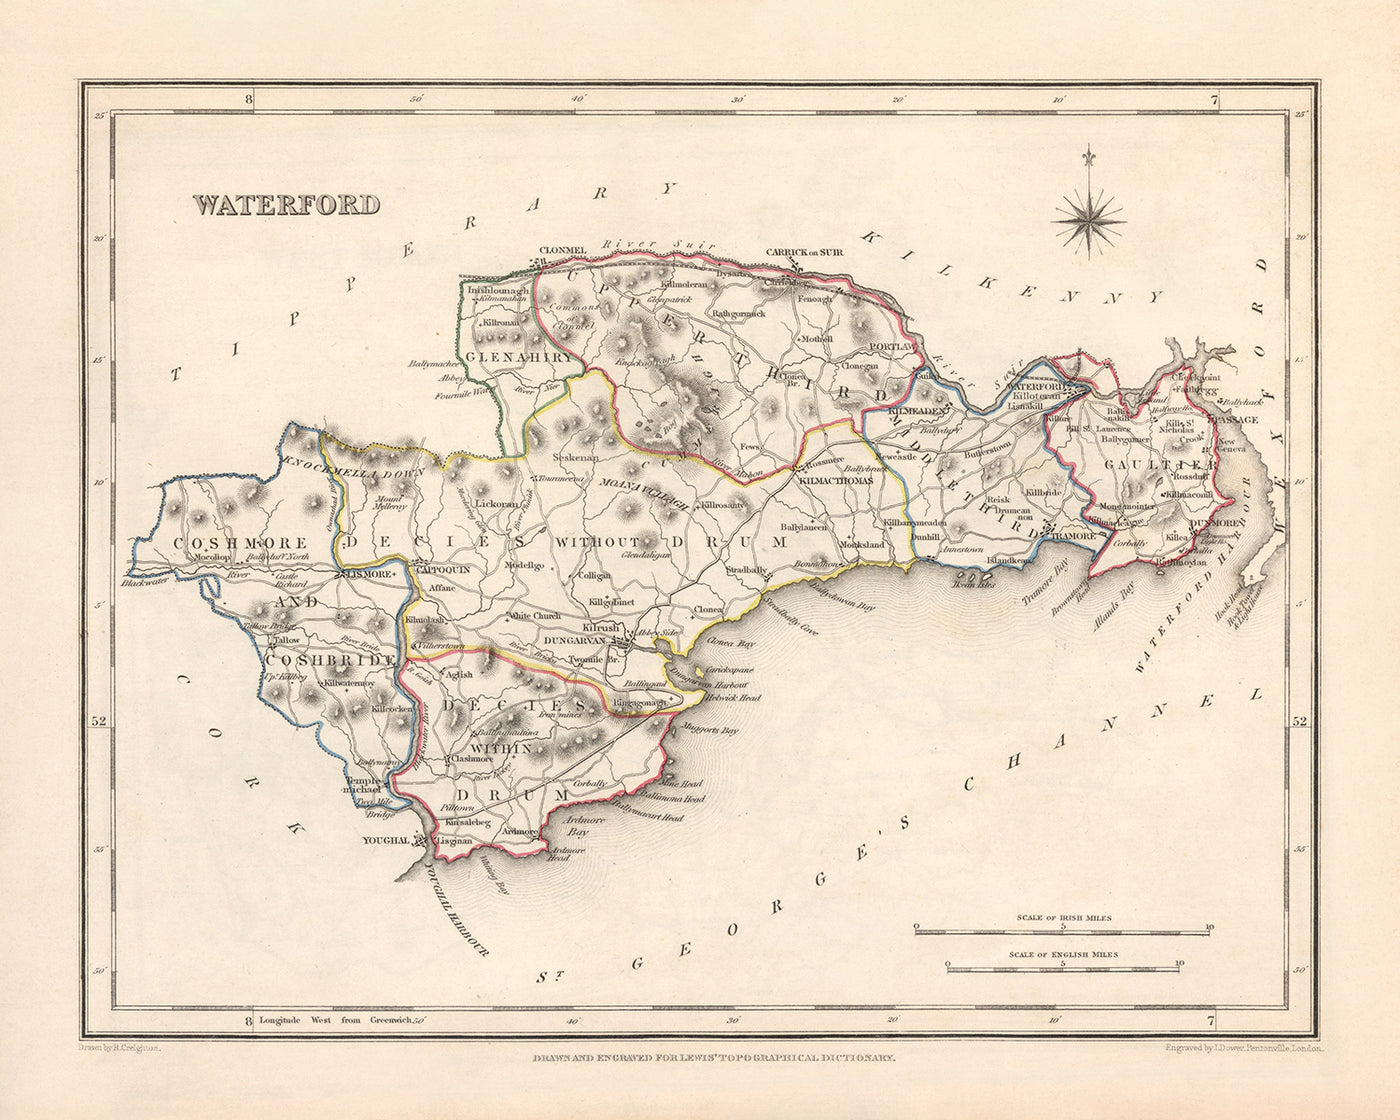 Ancienne carte du comté de Waterford par Samuel Lewis, 1844 : Dungarvan, Lismore, Cappoquin, Tramore, Dunmore East